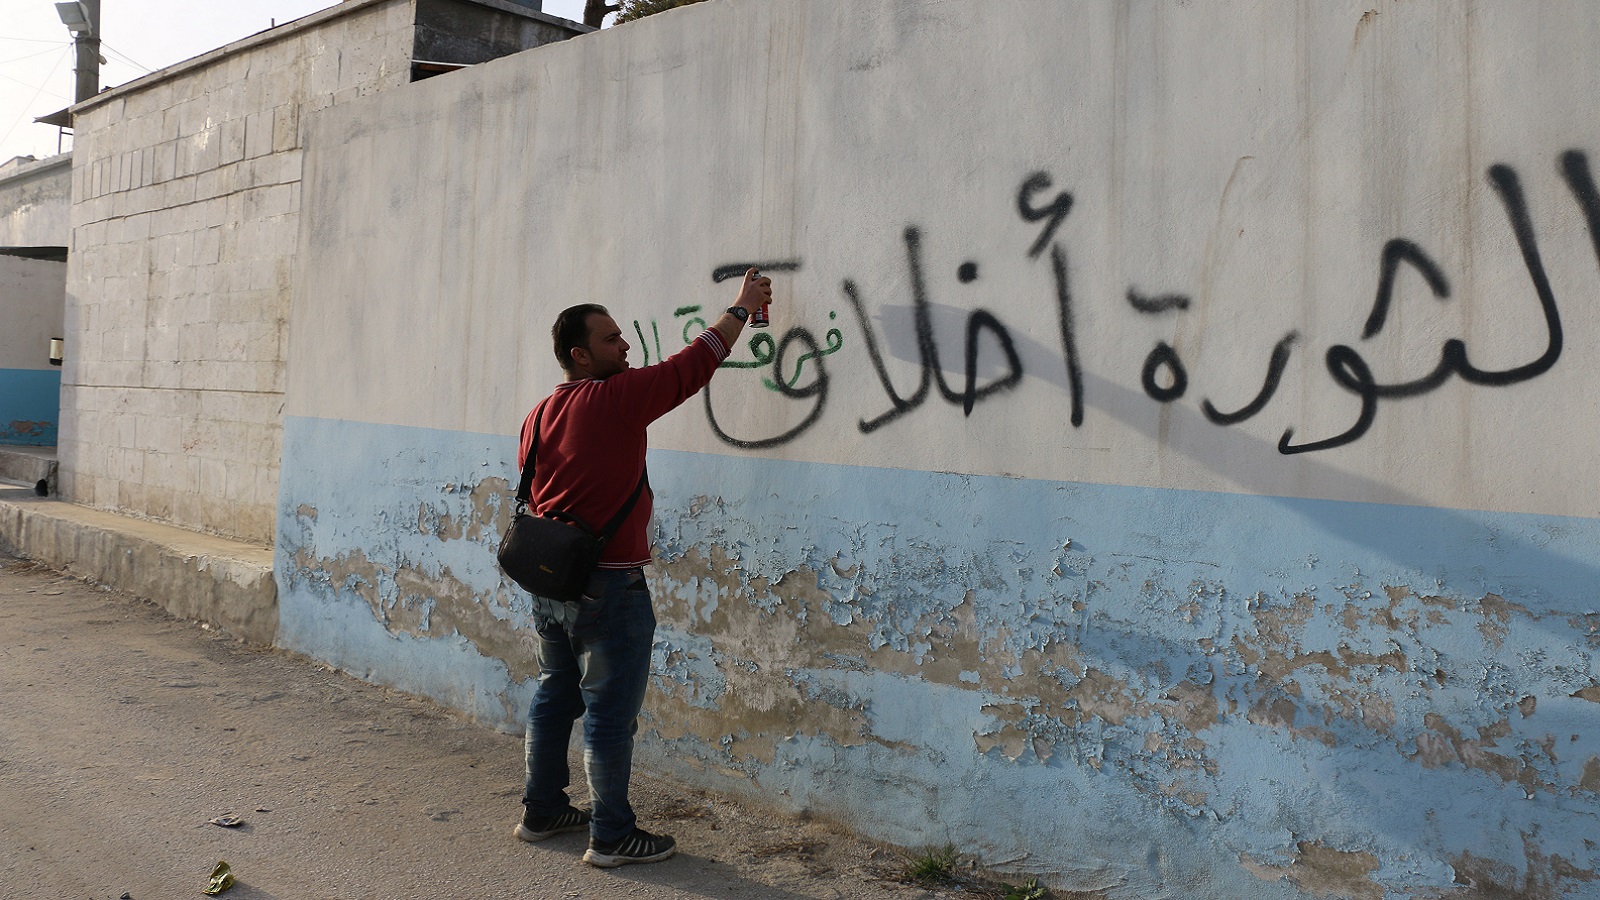 الحملة في عفرين كانت من أجل الأهالي الذين تعرضوا للظلم (المدن)